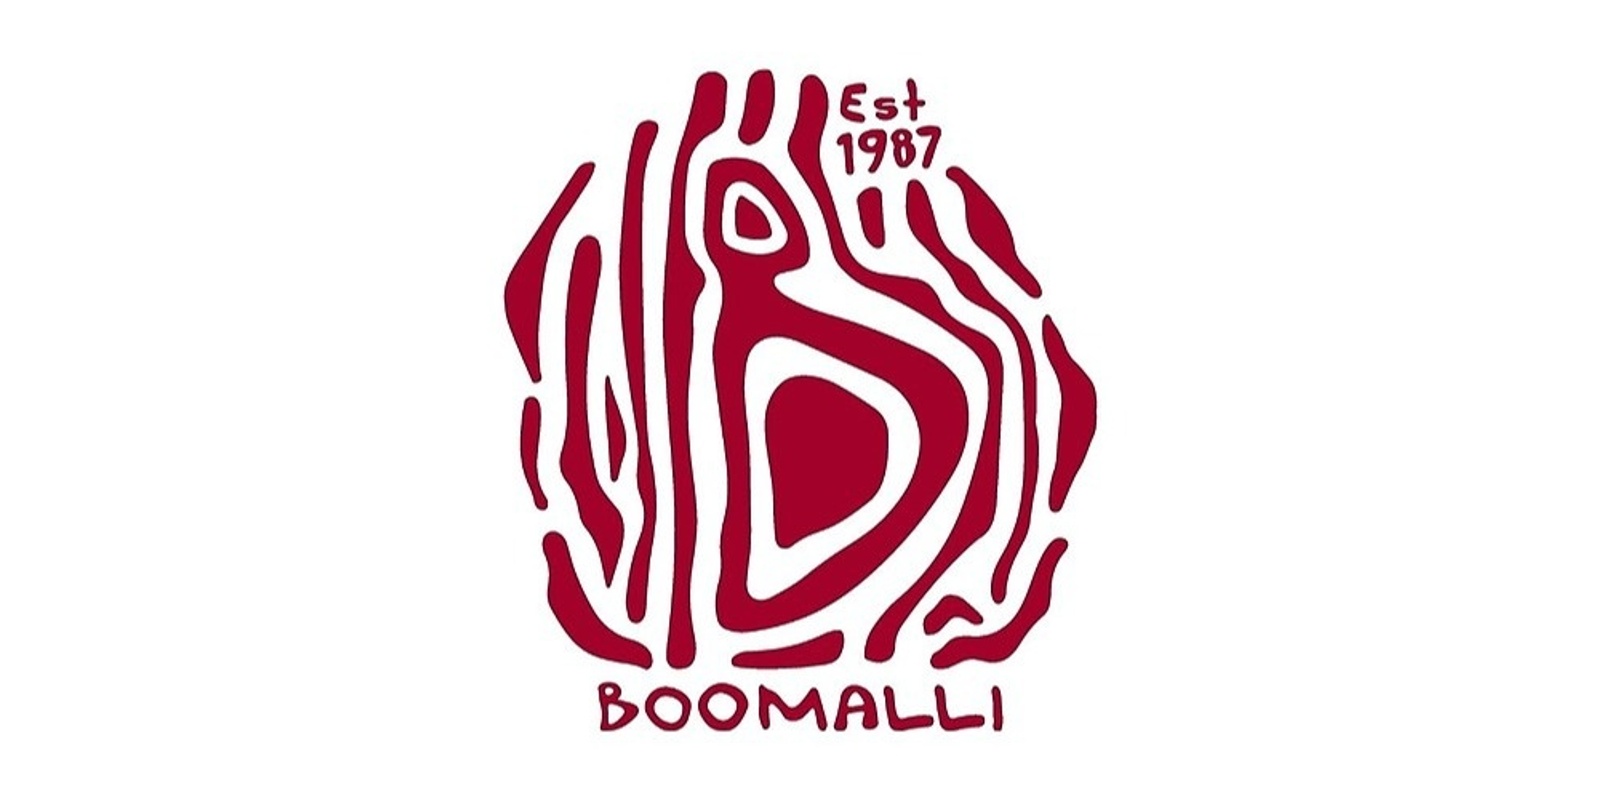 Boomalli's 35th Anniversary Fundraiser